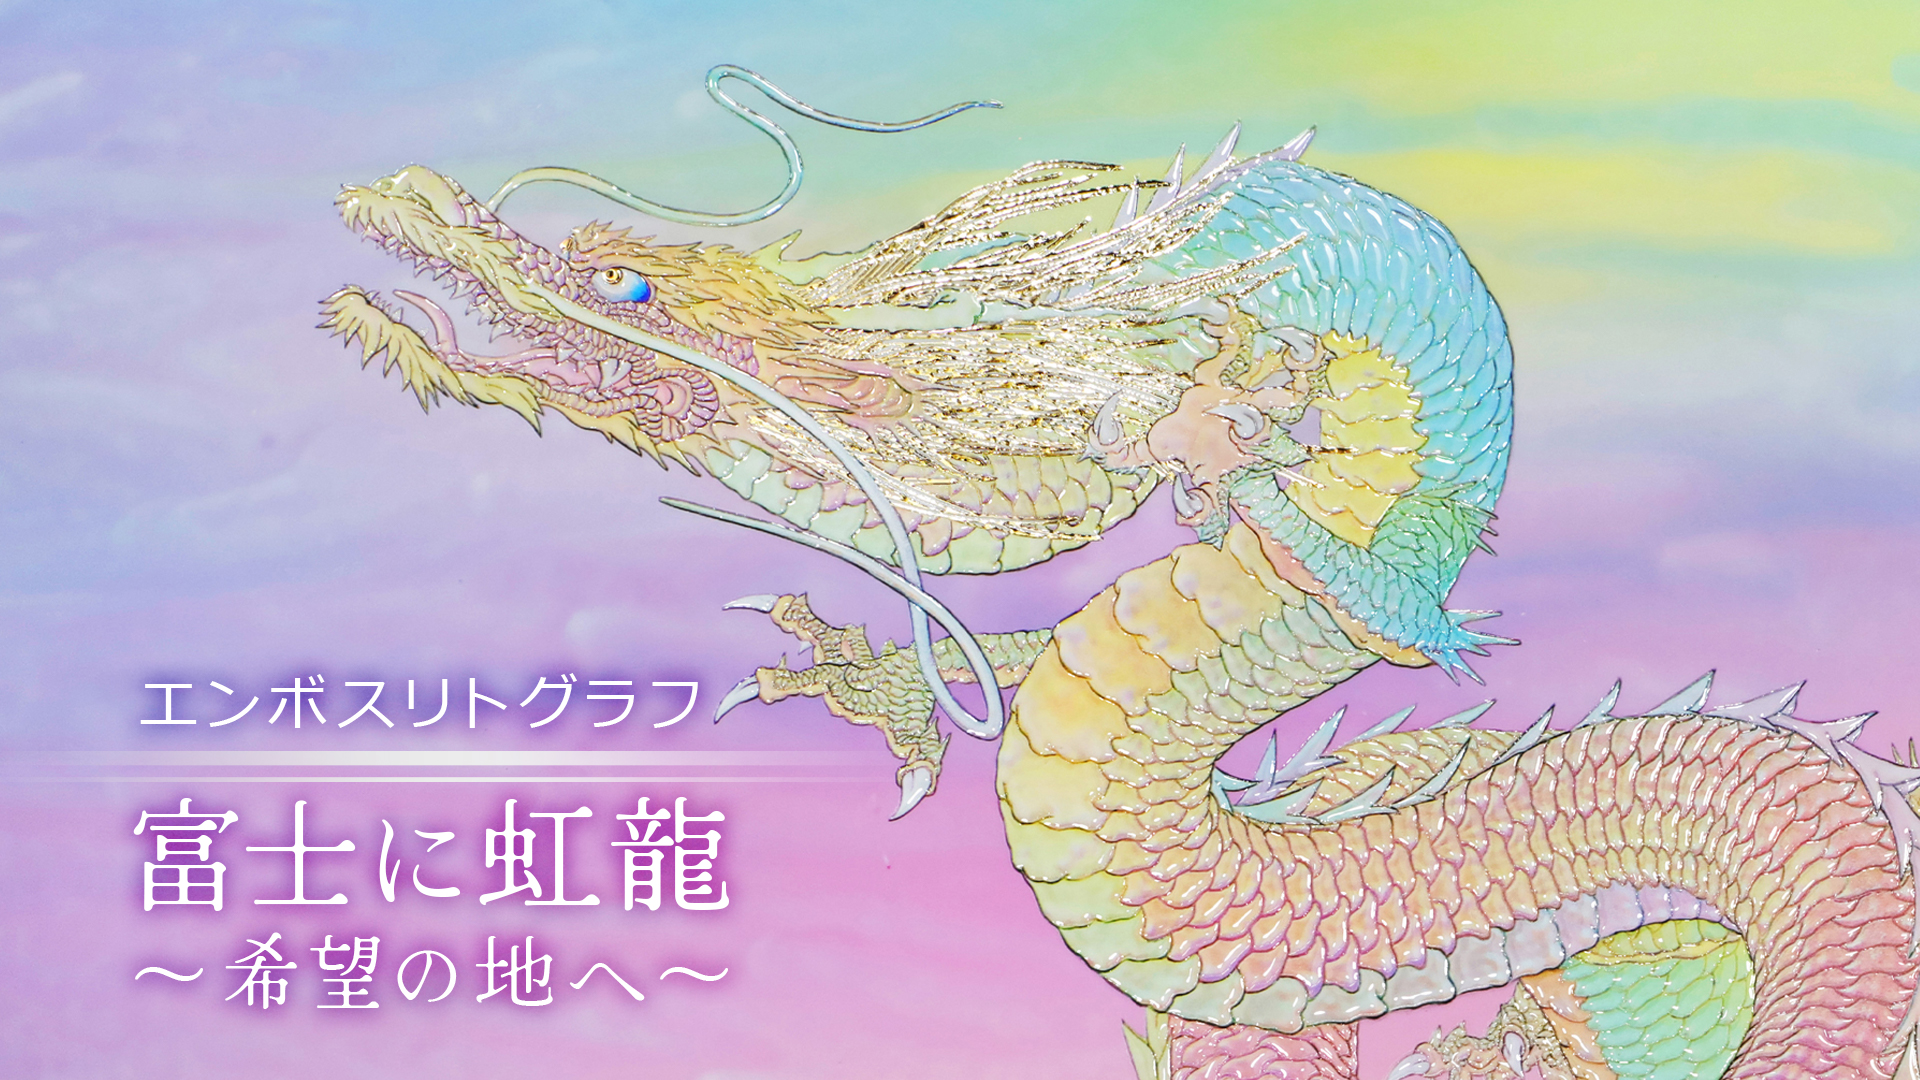 エンボスリトグラフ　富士に虹龍～希望の地へ～复制画有3种。<br>
请通过视频浏览各自的特征。